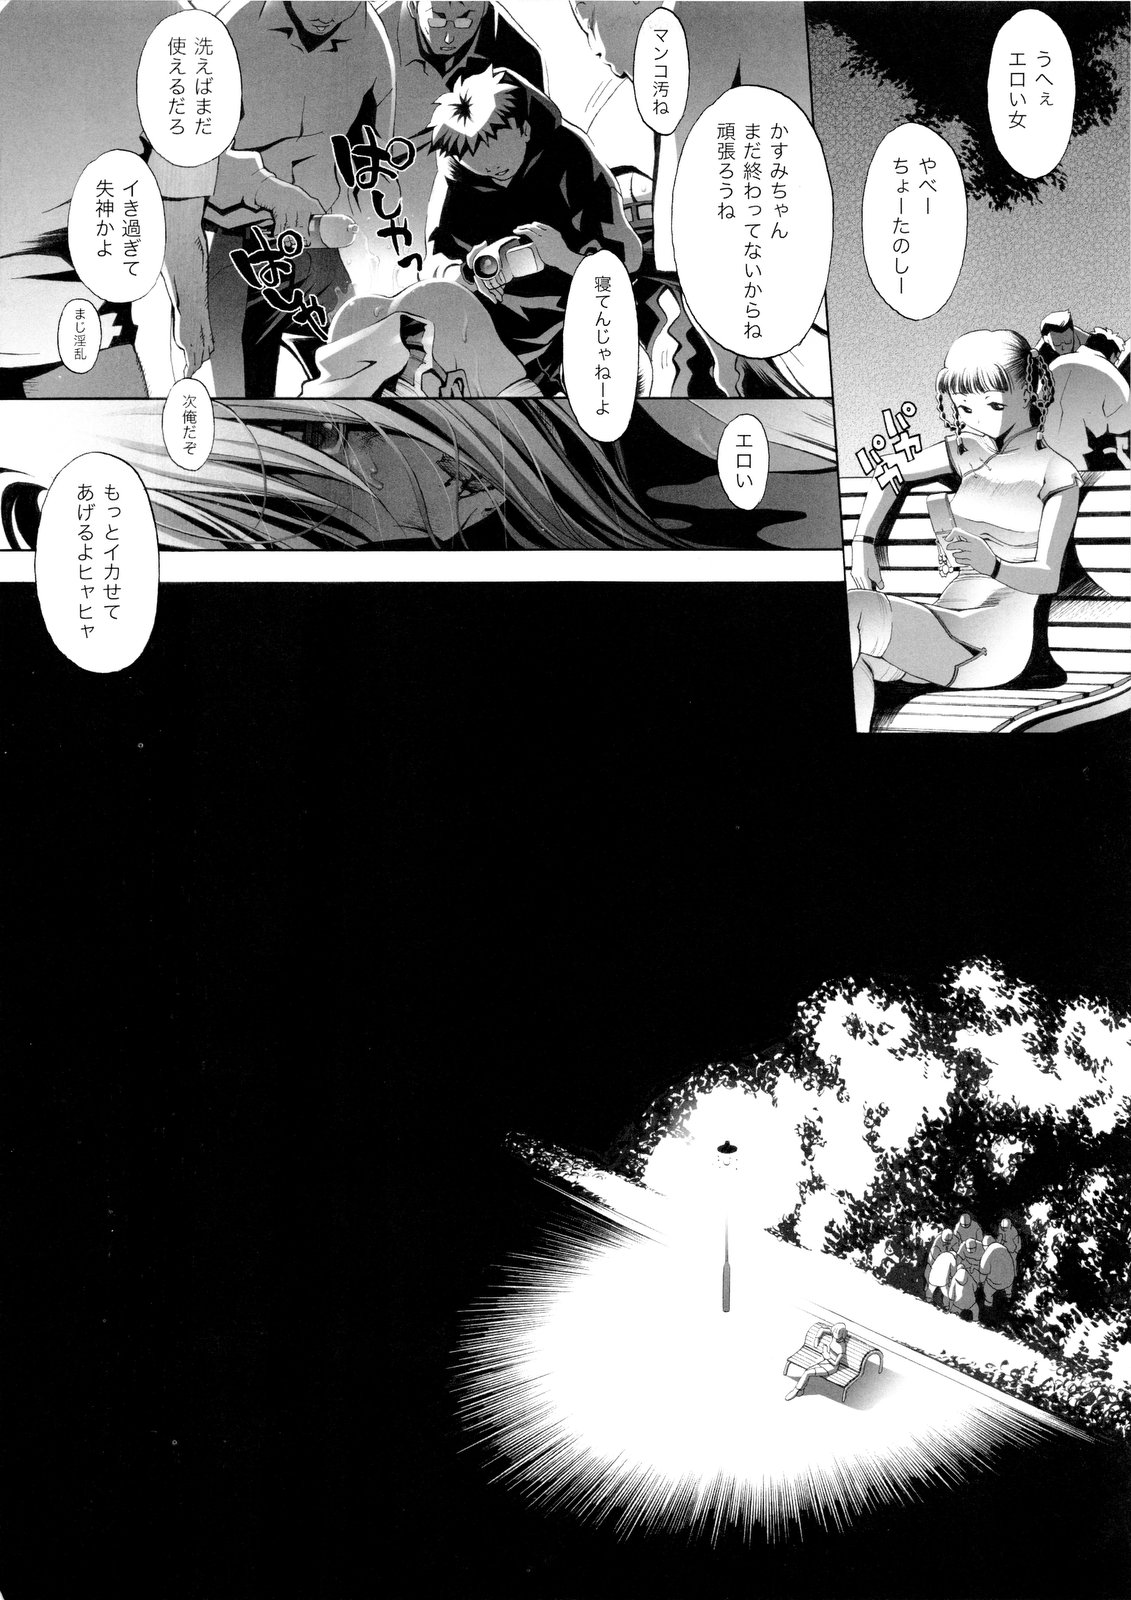 [Eric☆Peterson (Arao Masaki)] RUDE AWAKENING (Dead or Alive) [2nd Edition 2010-12] [エリック☆ピーターソン (荒尾マサキ)] RUDE AWAKENING (デッド・オア・アライブ) [第2版 2010年12月]